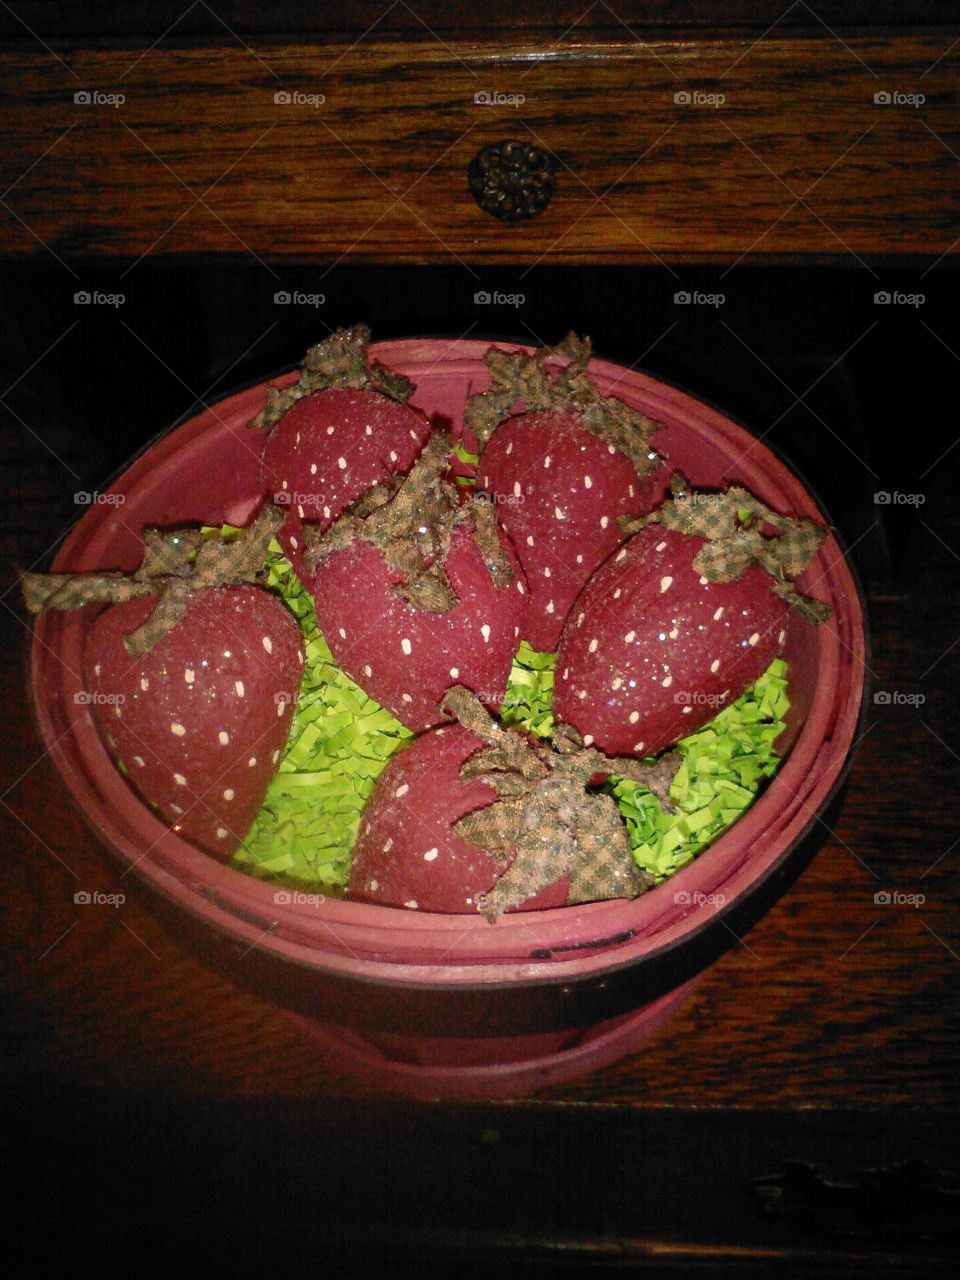 Basket Of Strawberries